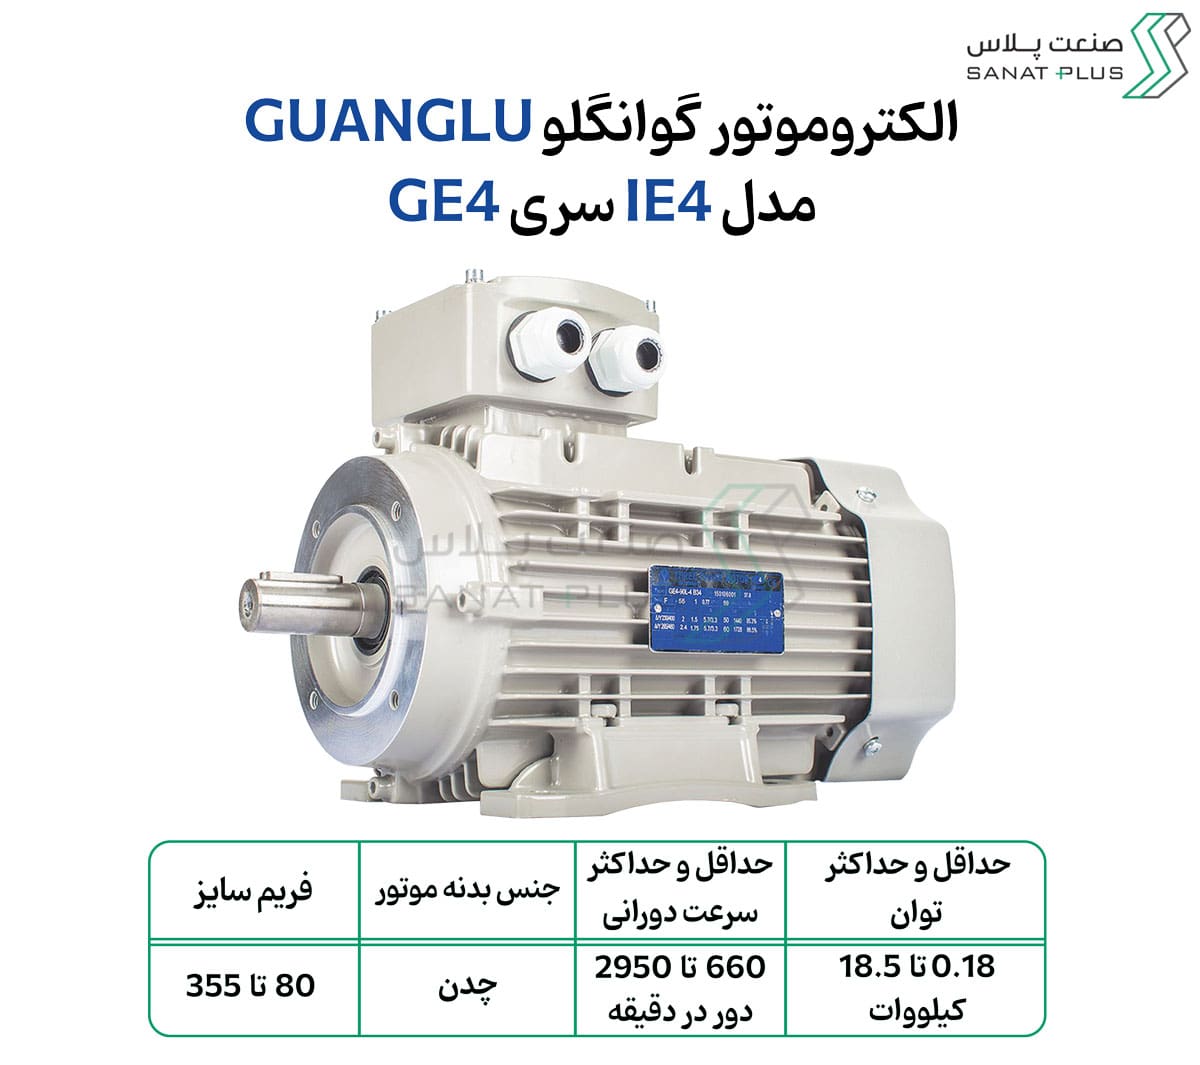 الکتروموتور گوانگلو (GUANGLU) مدل GE4